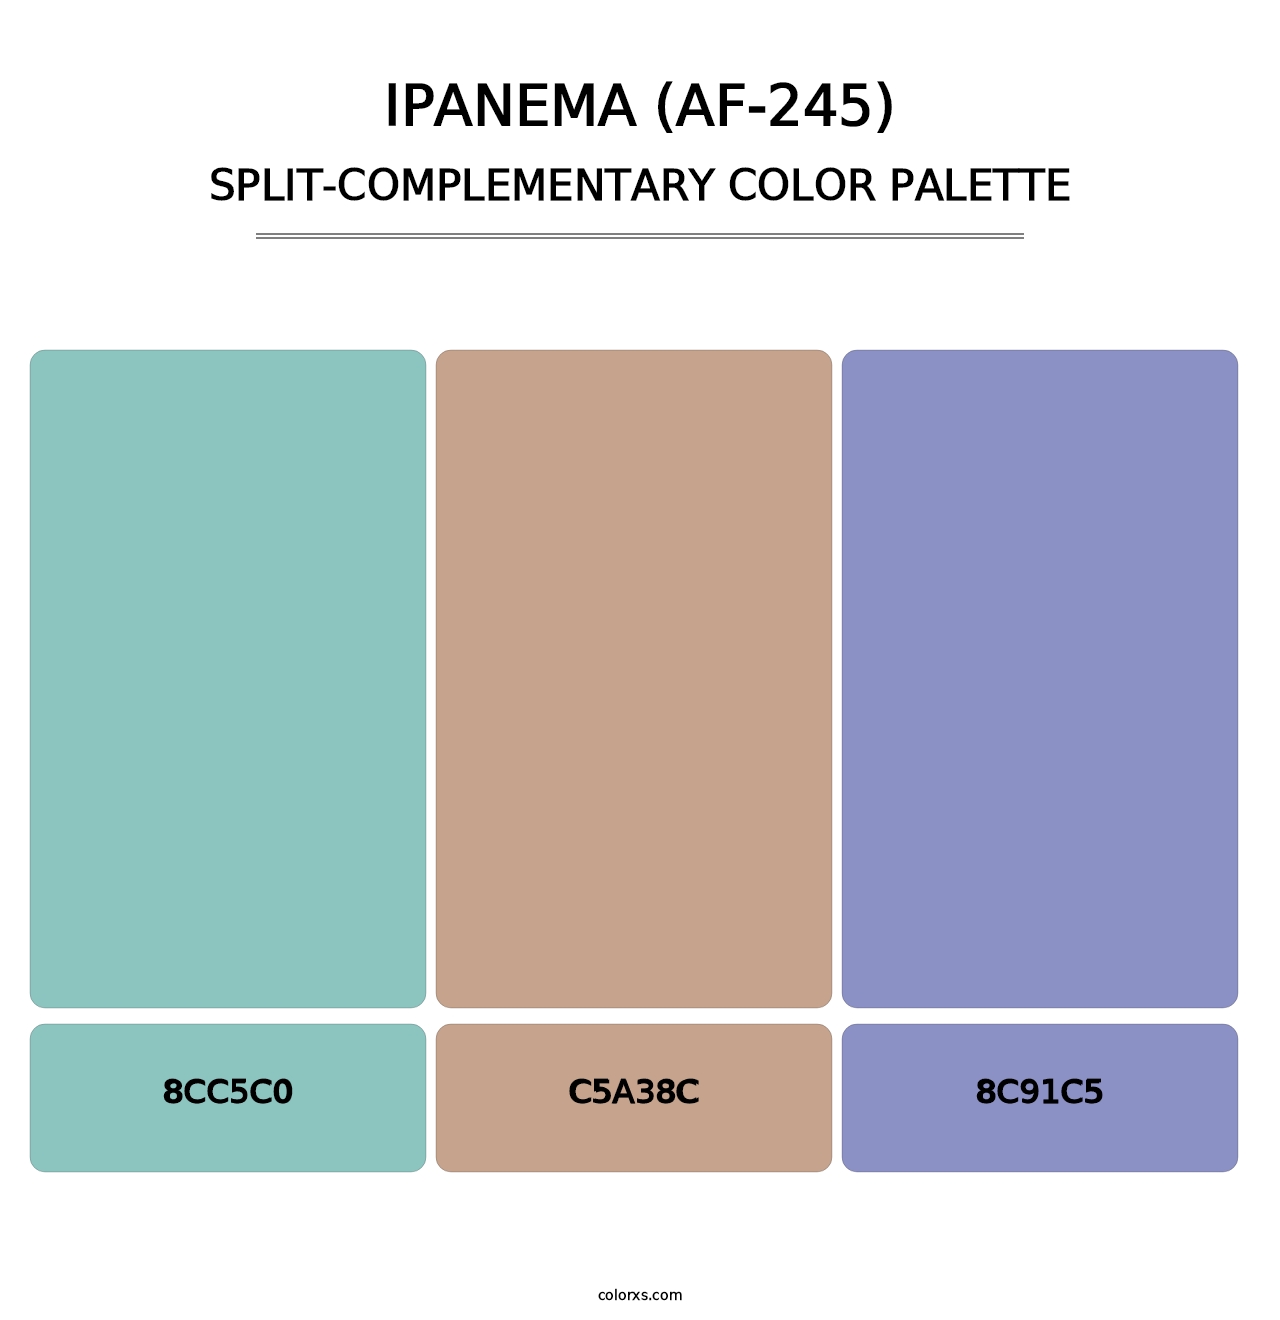 Ipanema (AF-245) - Split-Complementary Color Palette